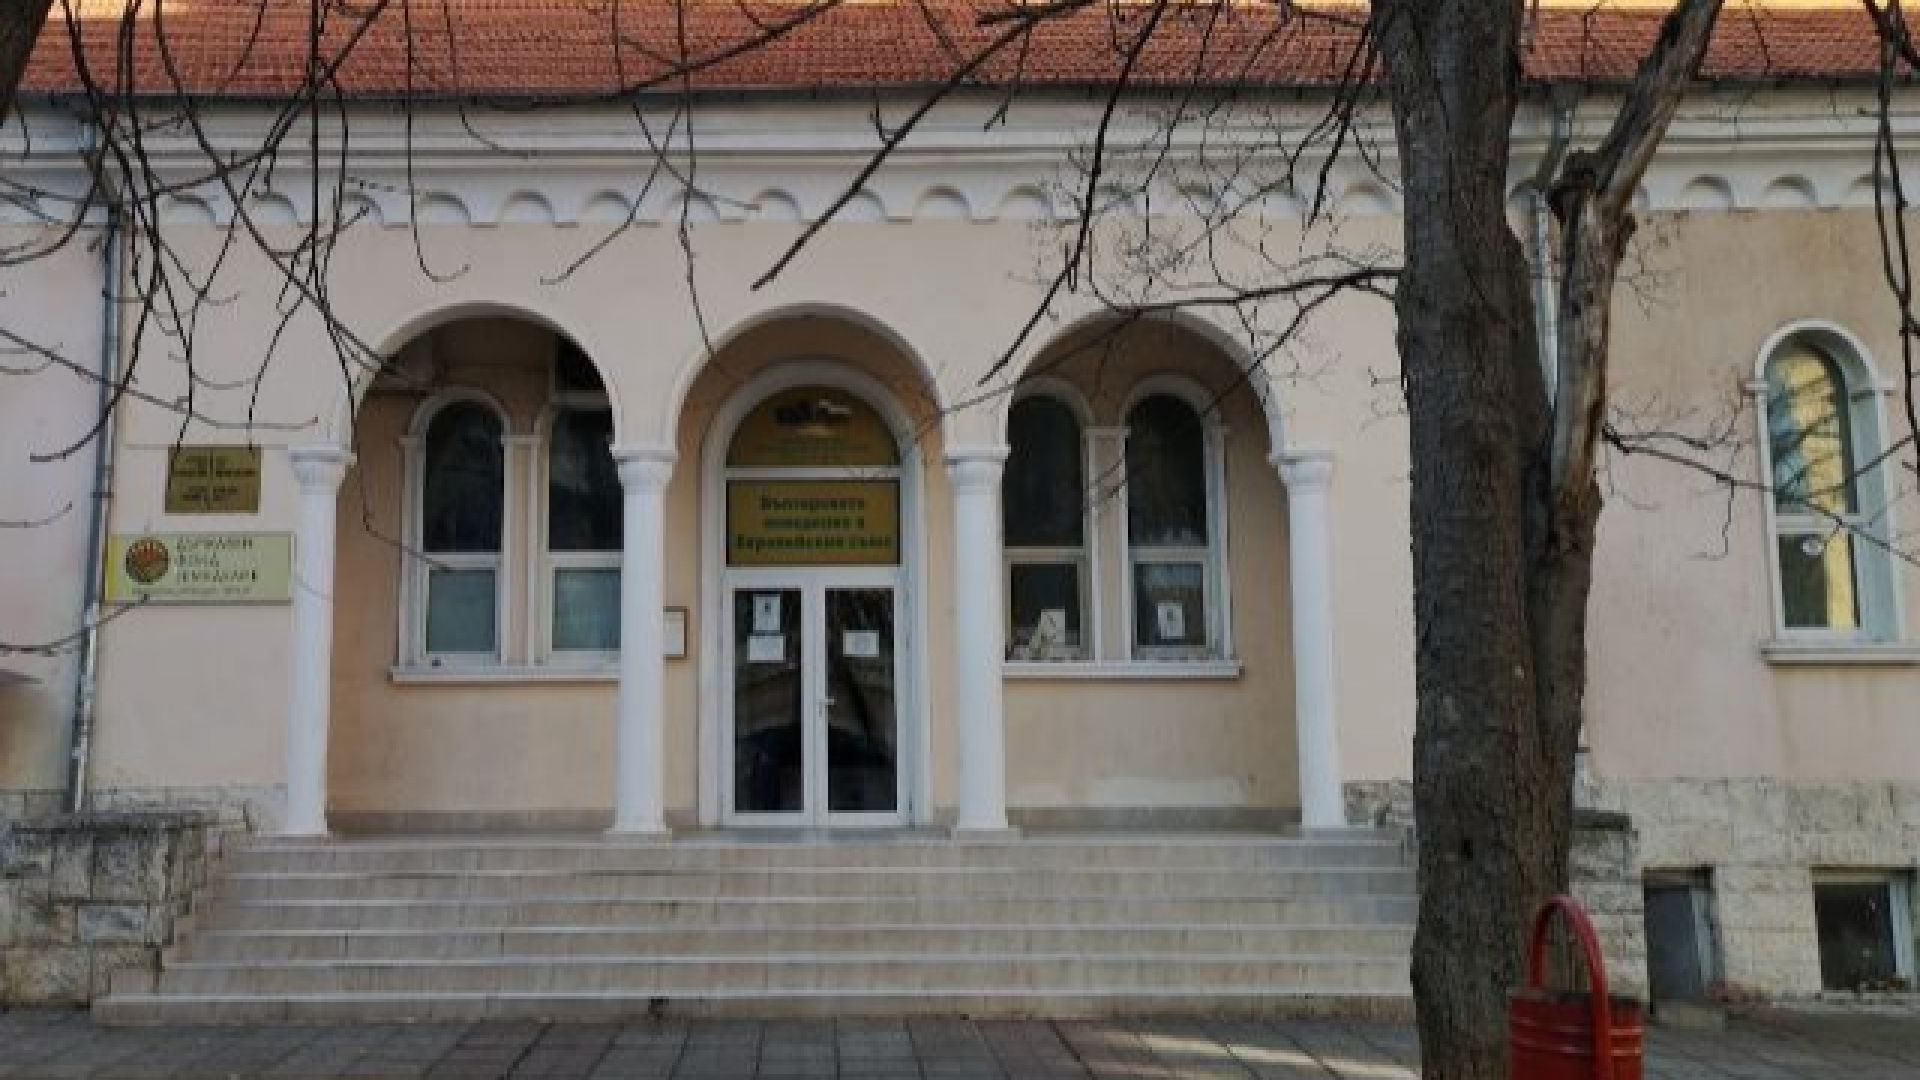 Офисът на Държавен фонд Земеделие в Кюстендил ще бъде затворен